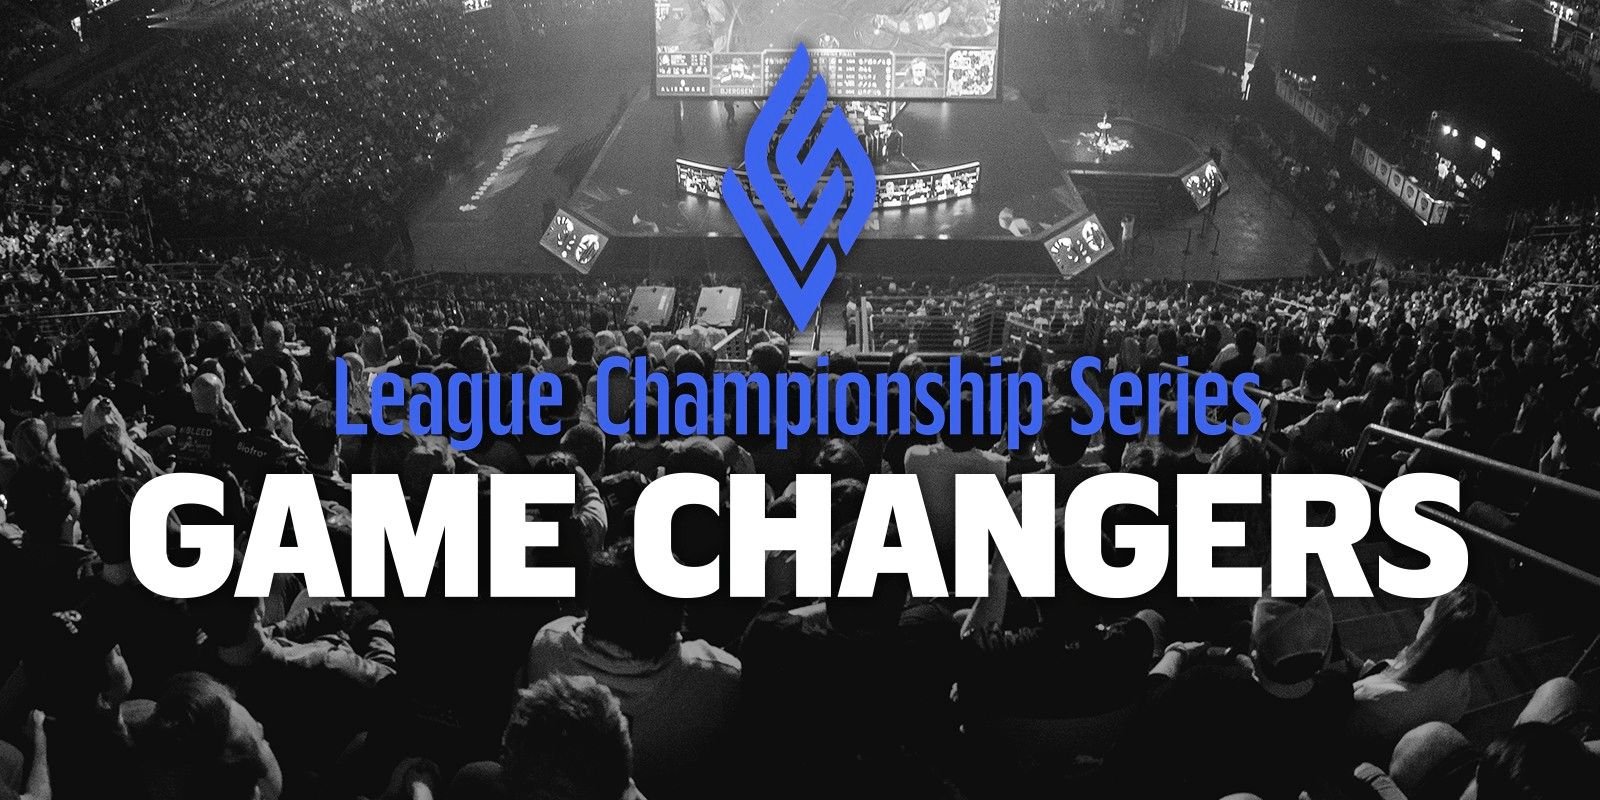 El programa Game Changers de League of Legends promueve la diversidad en los deportes electrónicos